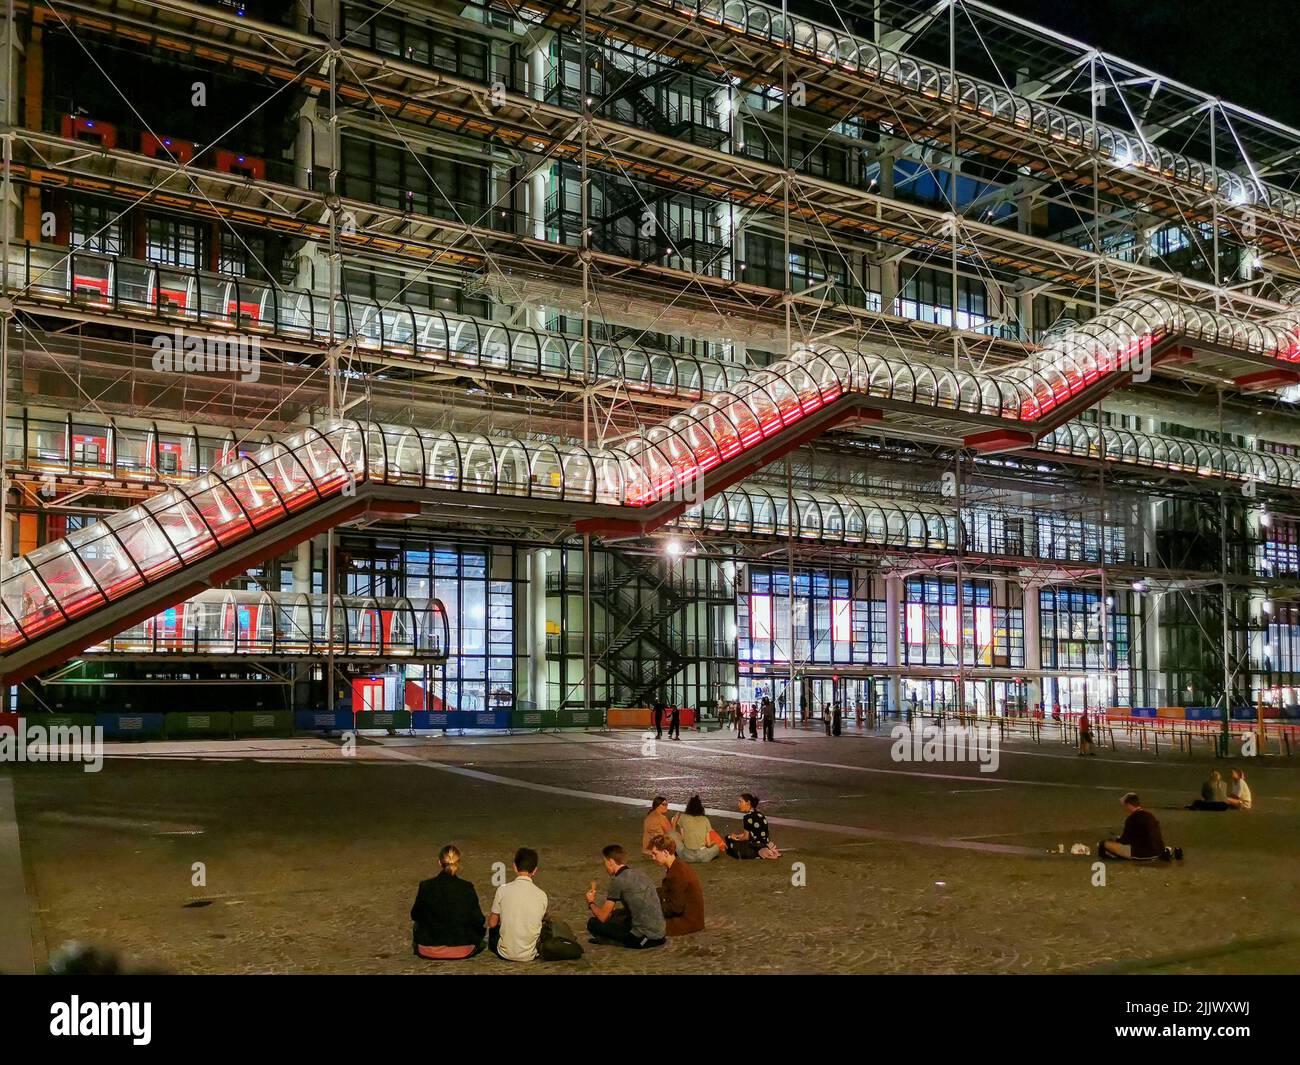 Francia, París, el Centro Pompidou También conocido como el Centro Pompidou es un edificio complejo en la zona de Beaubourg del distrito 4th de París. YO Foto de stock